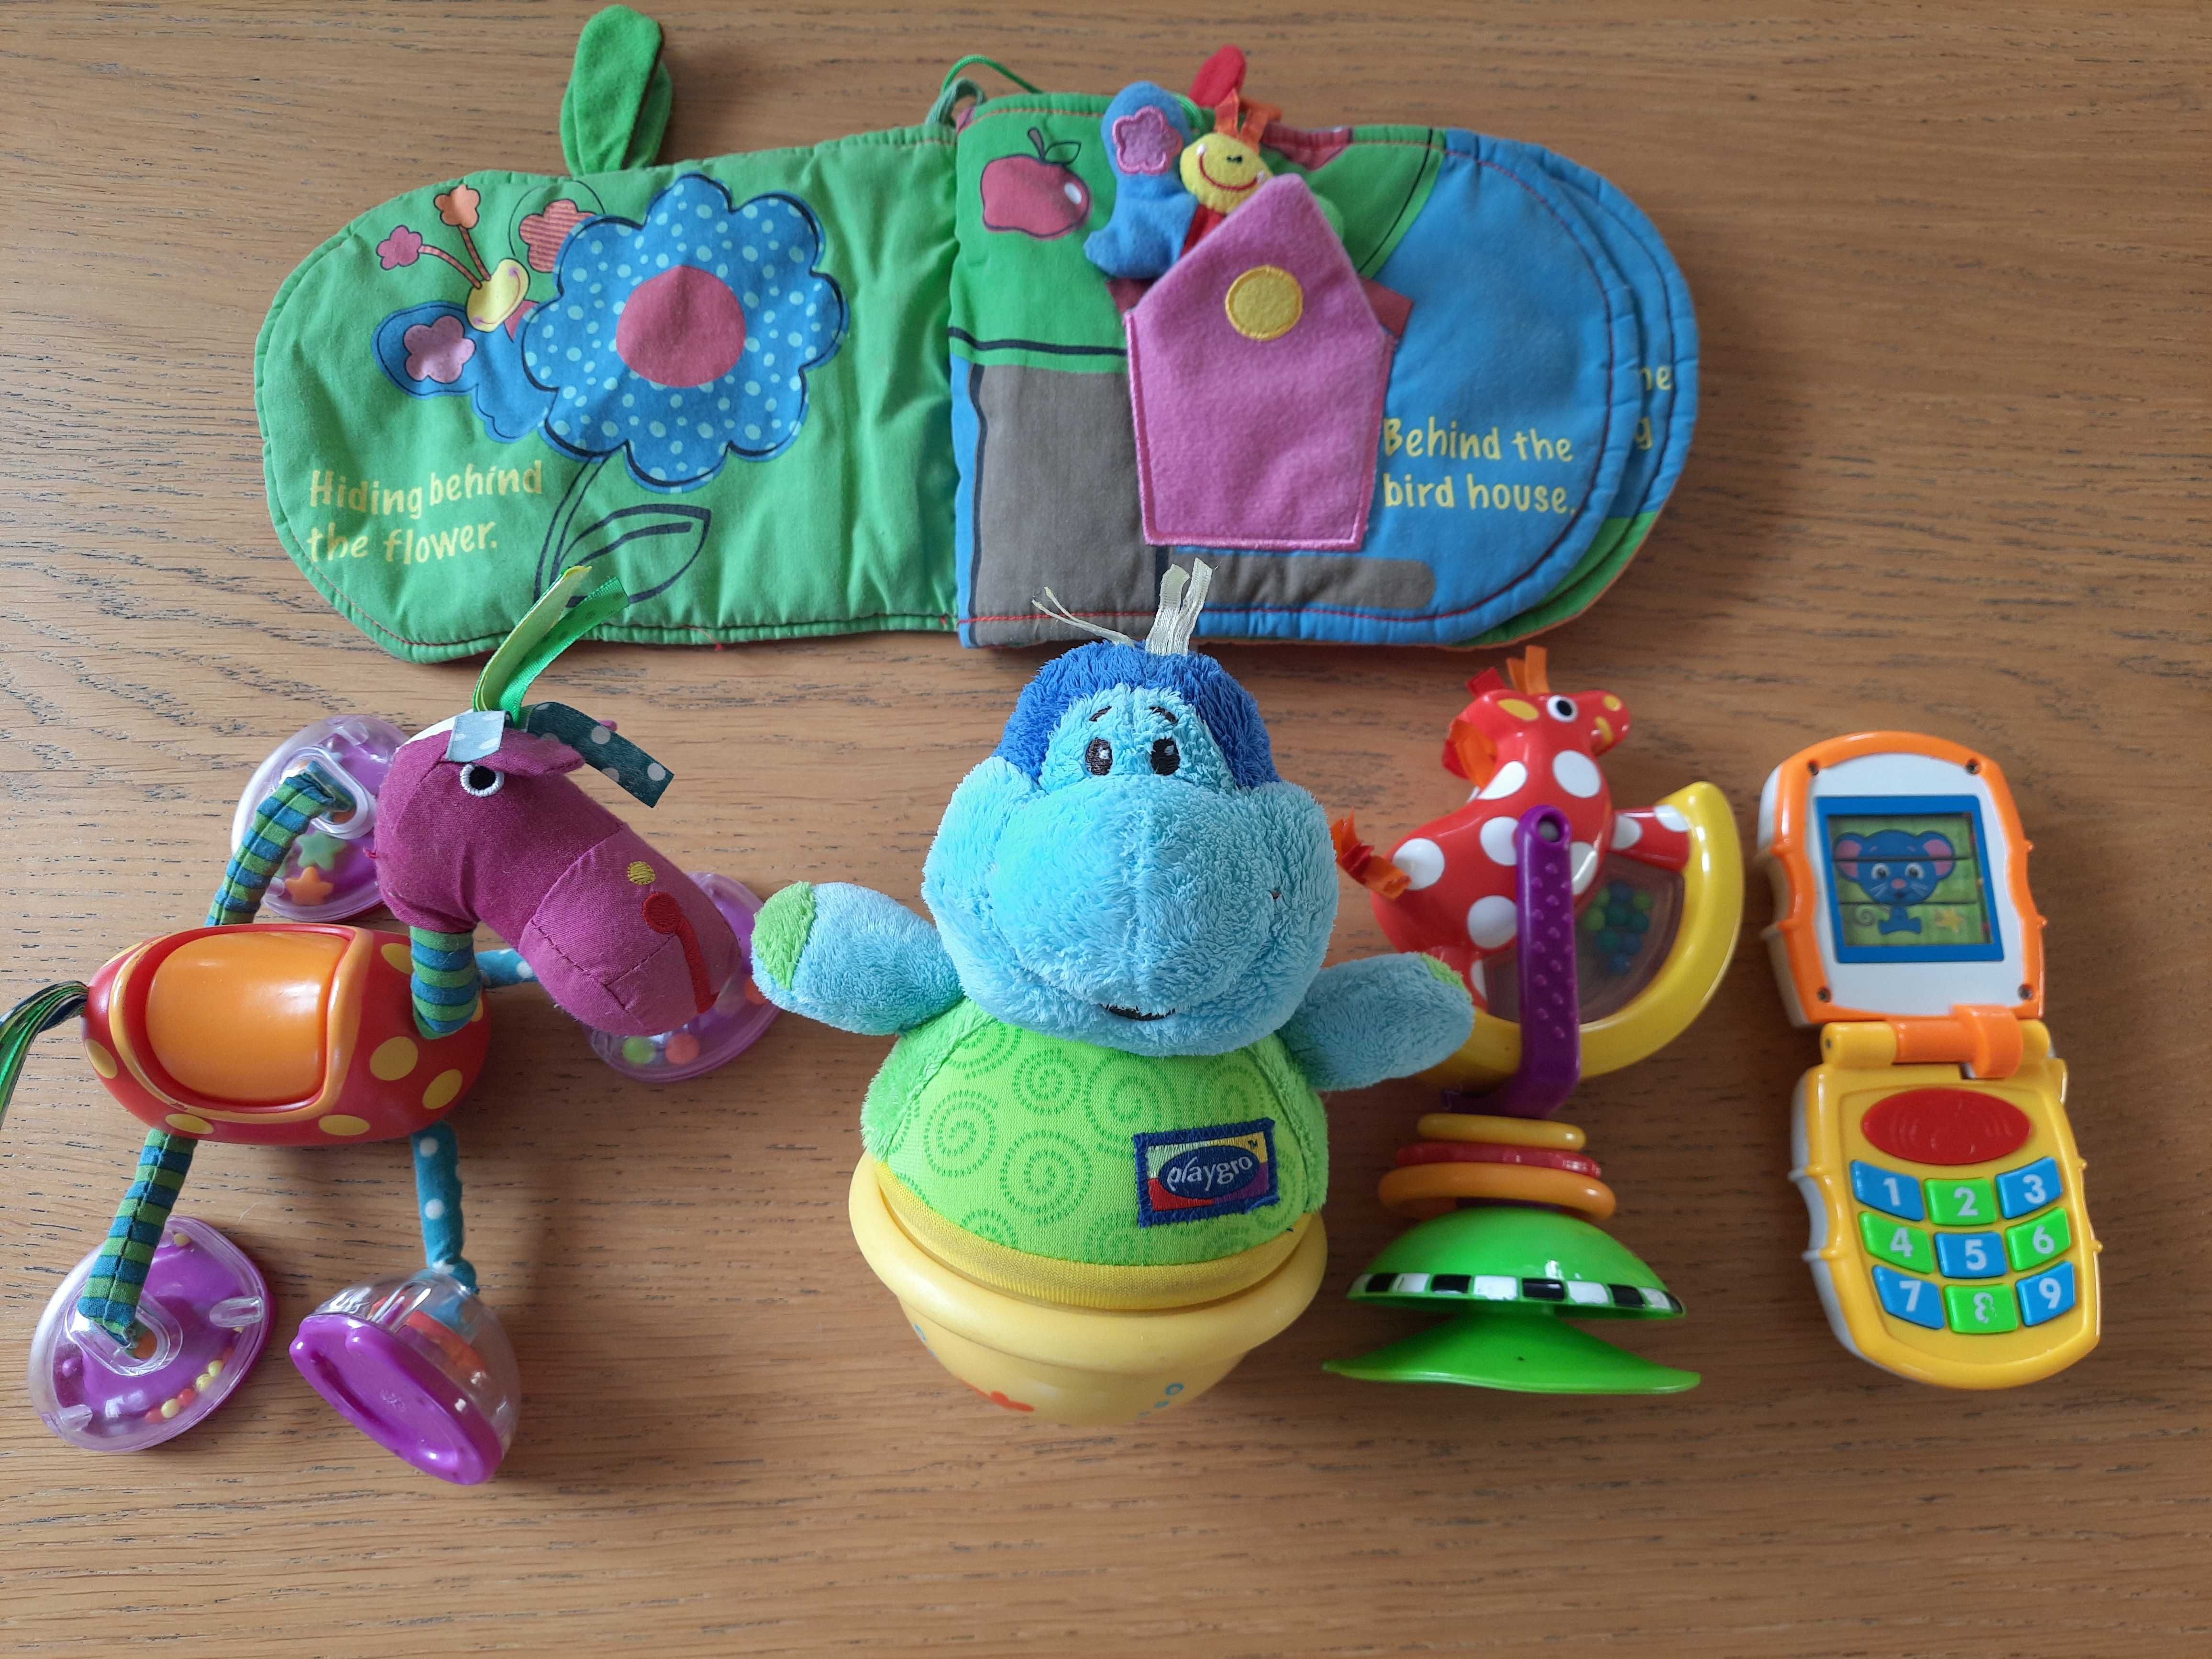 Playgro Wańka Wstańka Miś wydający odgłosy i inne zabawki